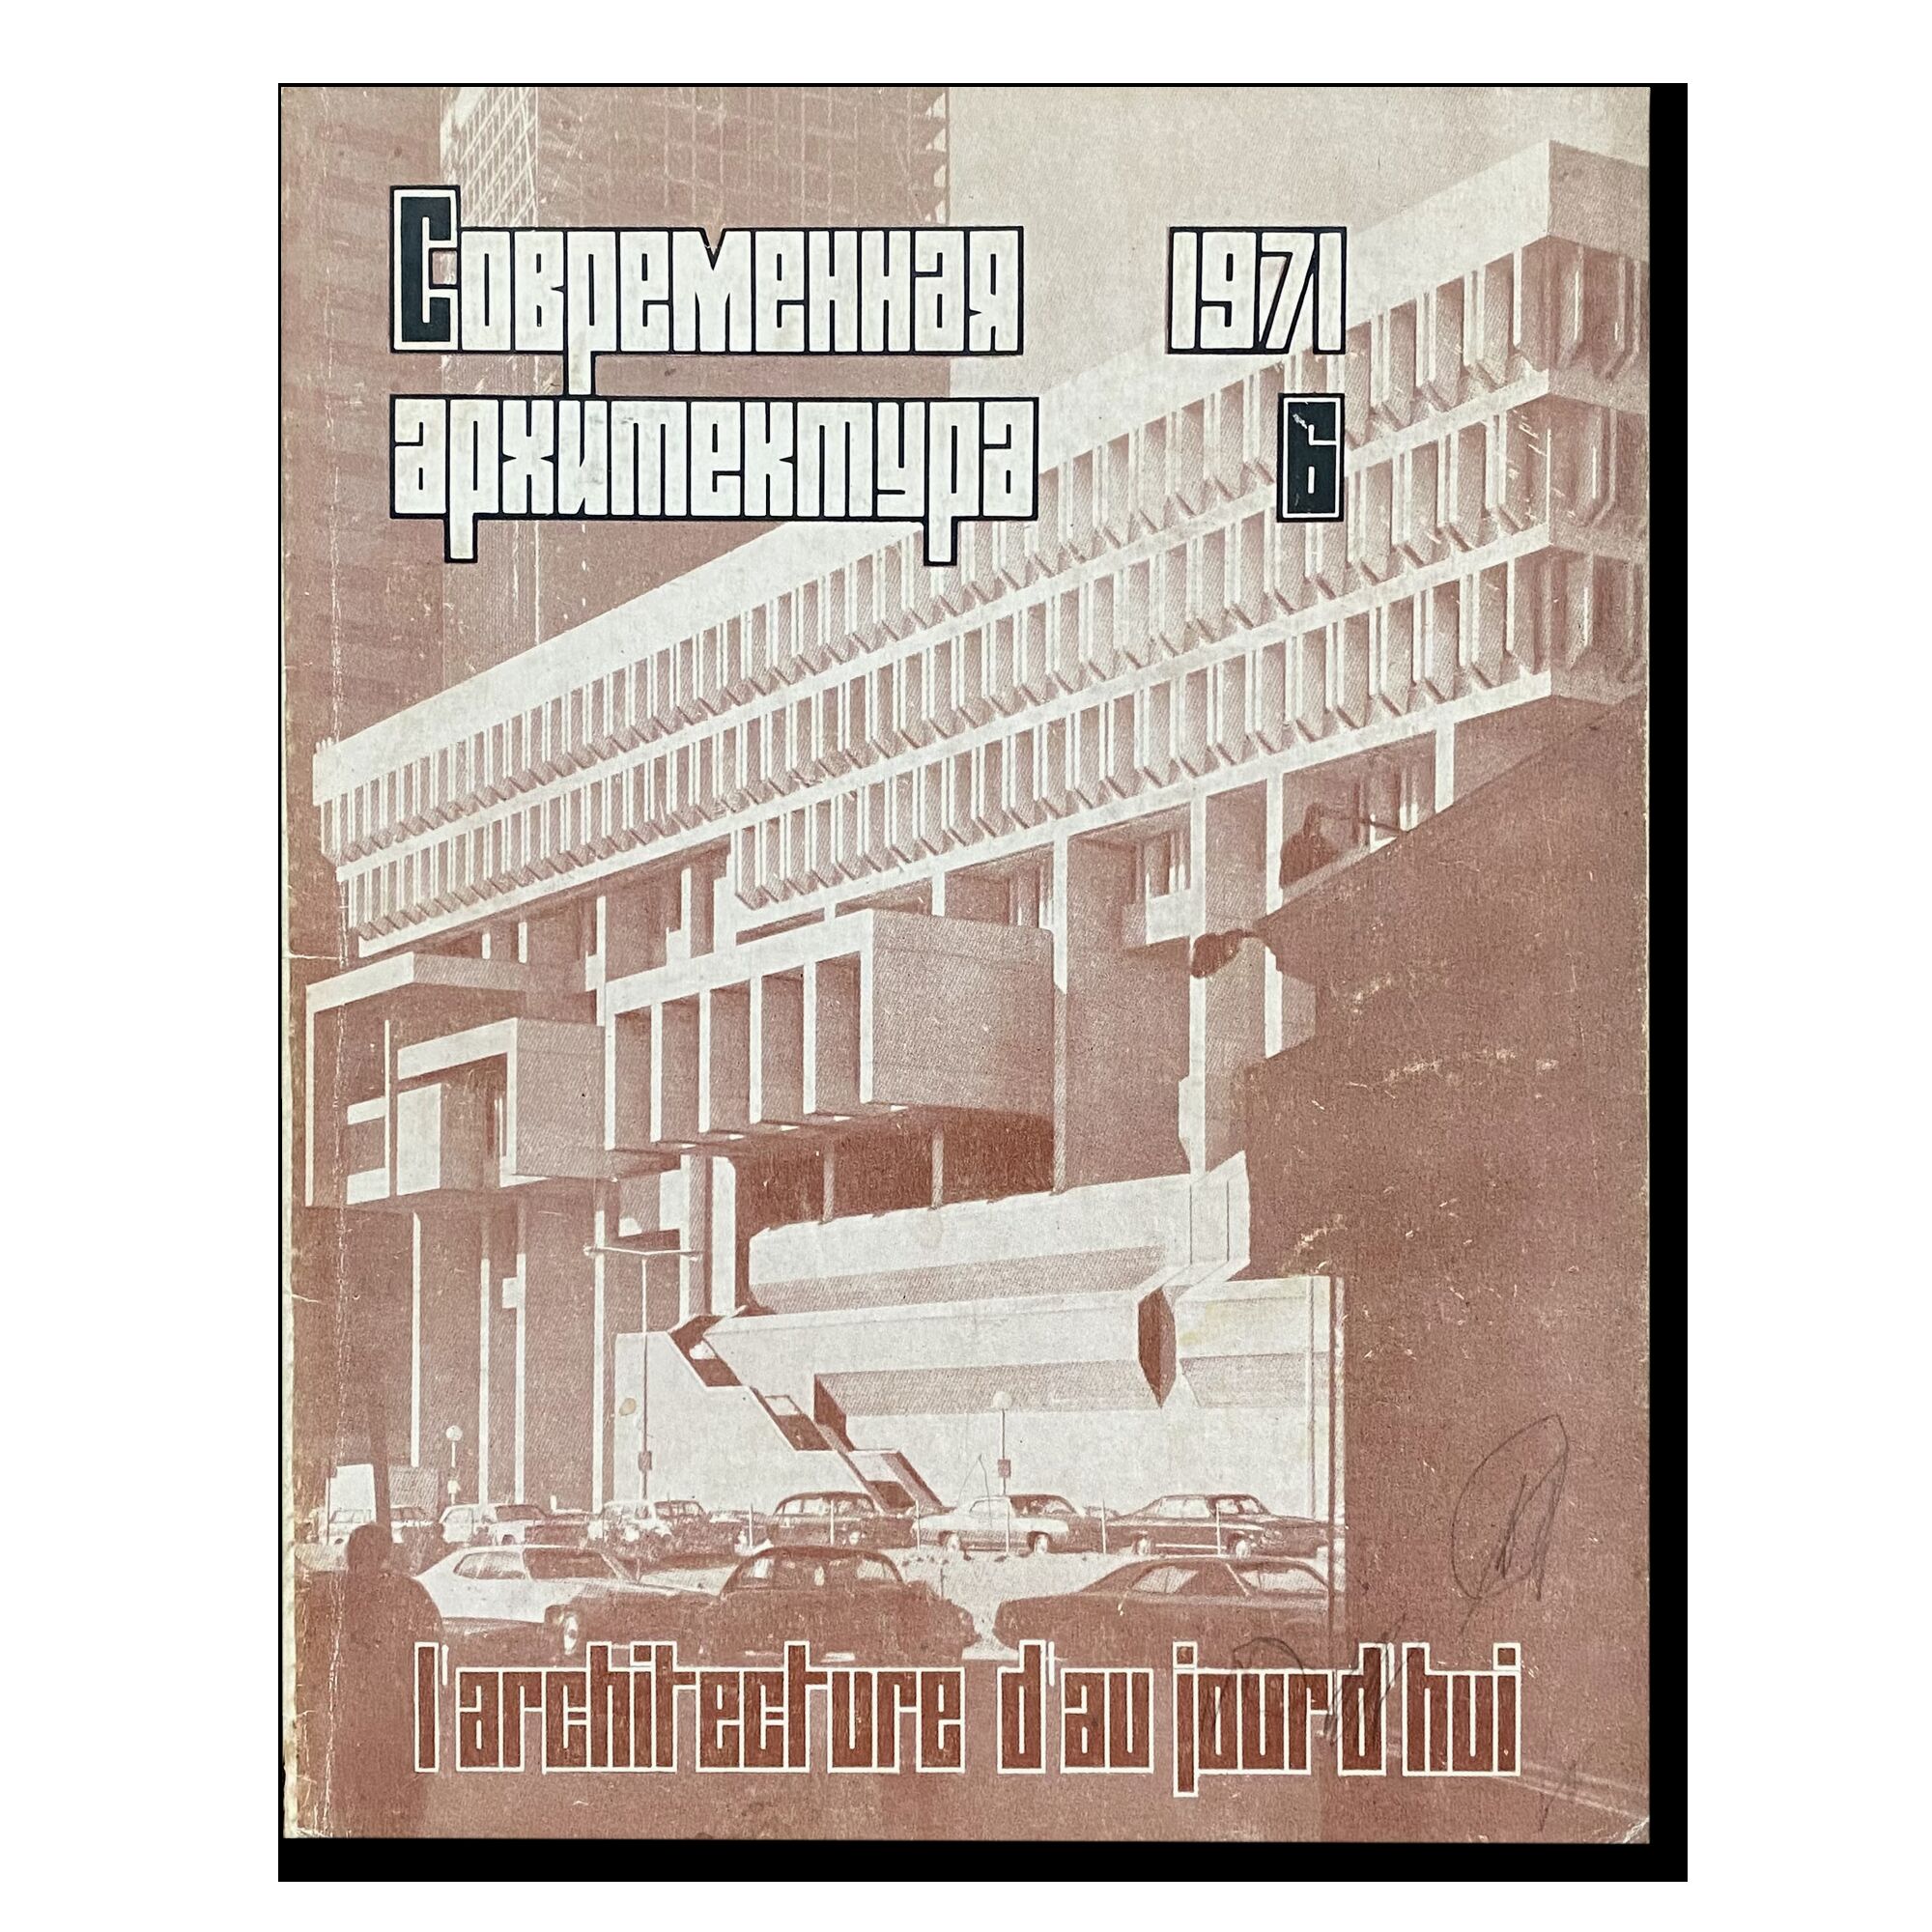 Журнал "Современная архитектура" (6) 1971